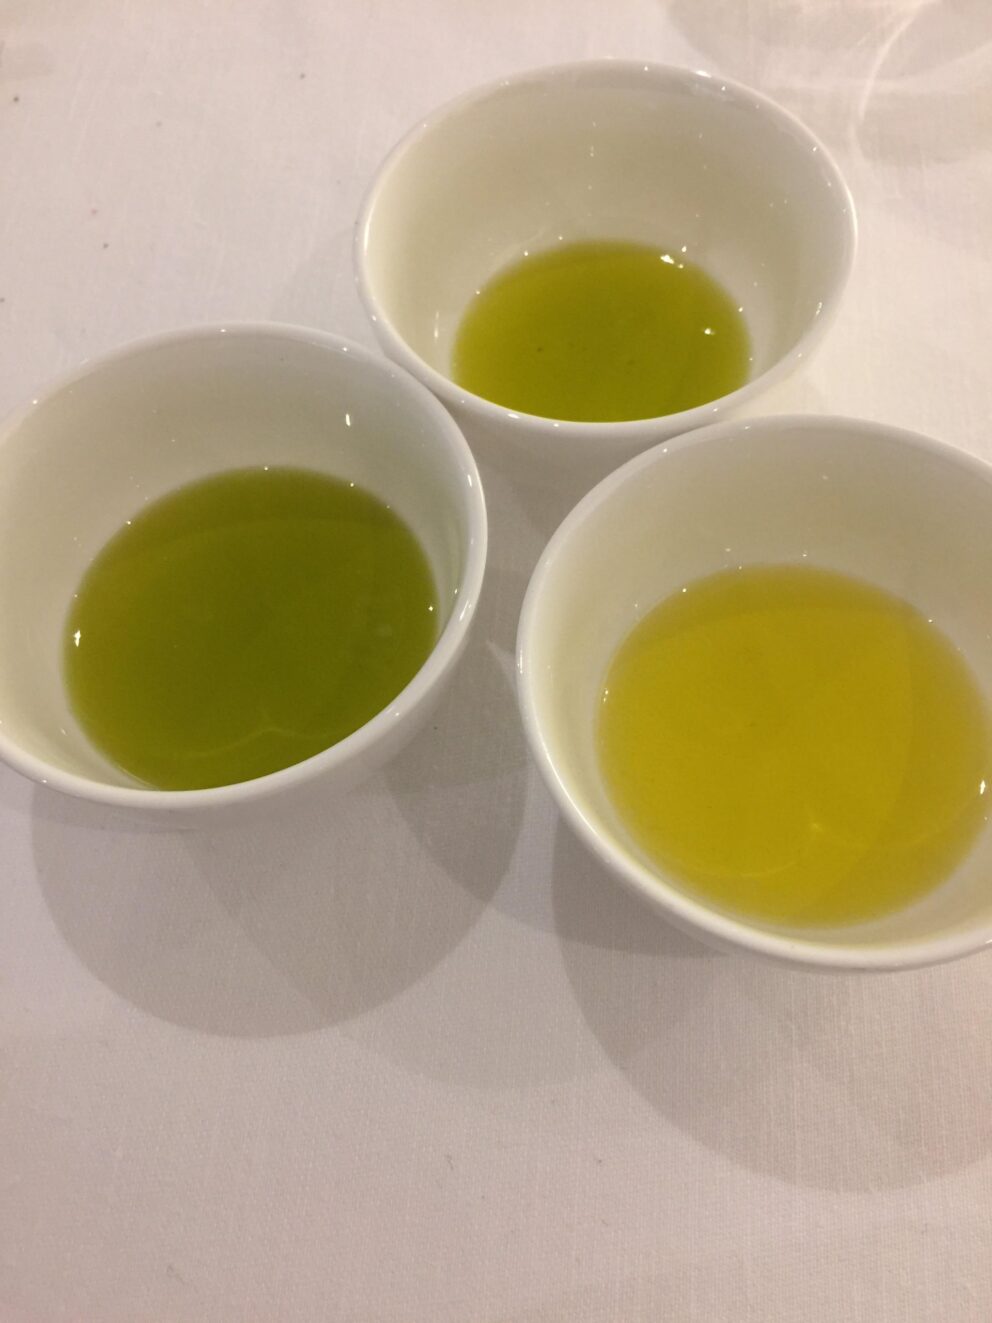 Comunicare l’olio da olive. Per farlo bene occorre agire in un’ottica chiara e responsabile